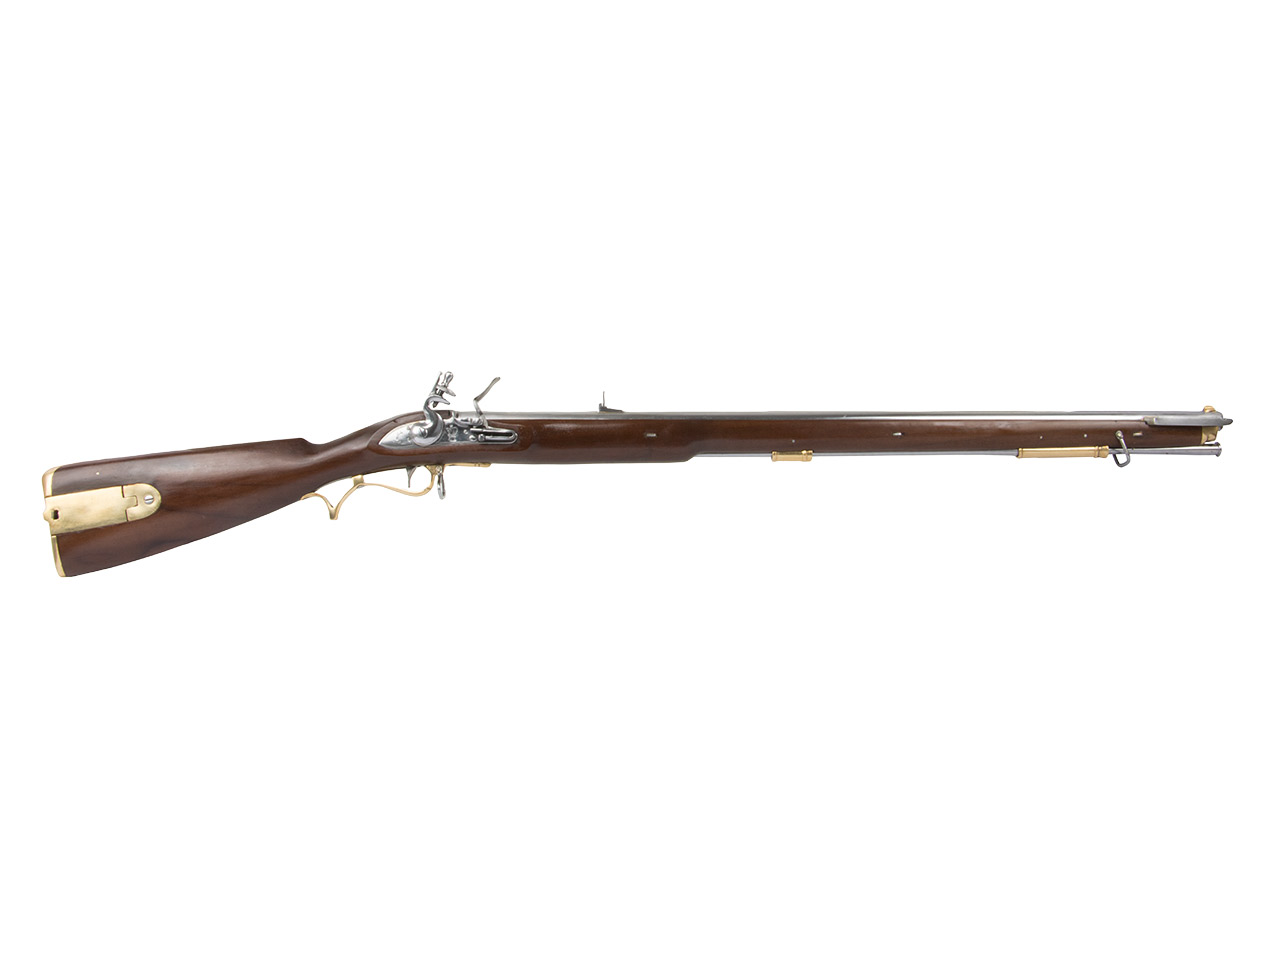 Vorderlader Steinschlossgewehr Pattern 1806 Baker Rifle mit Bajonett und Scheide Kaliber .63 bzw. 16 mm (P18)